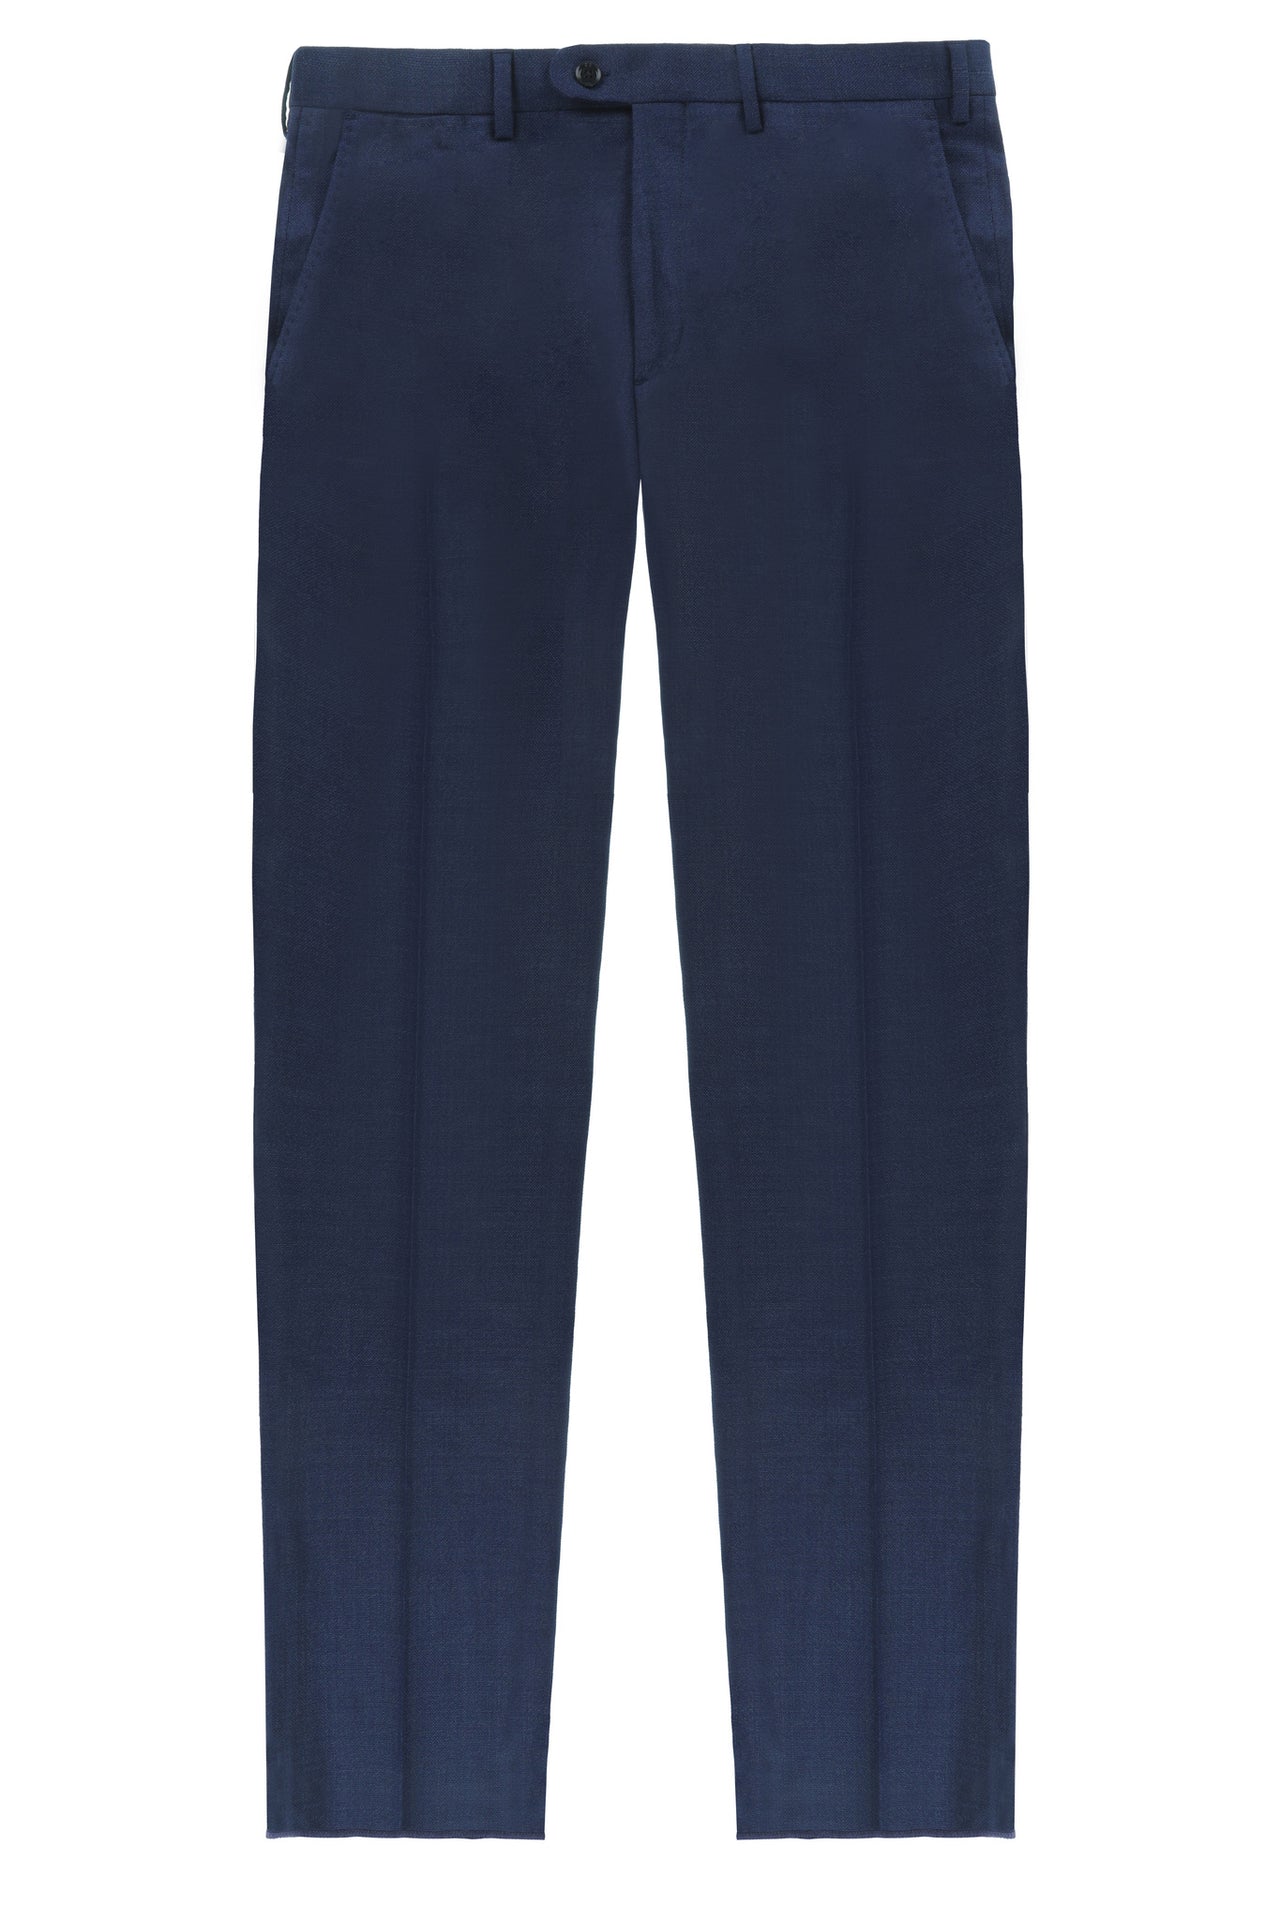 HENRY SARTORIAL Plain Trouser BLUE MELANGE REG